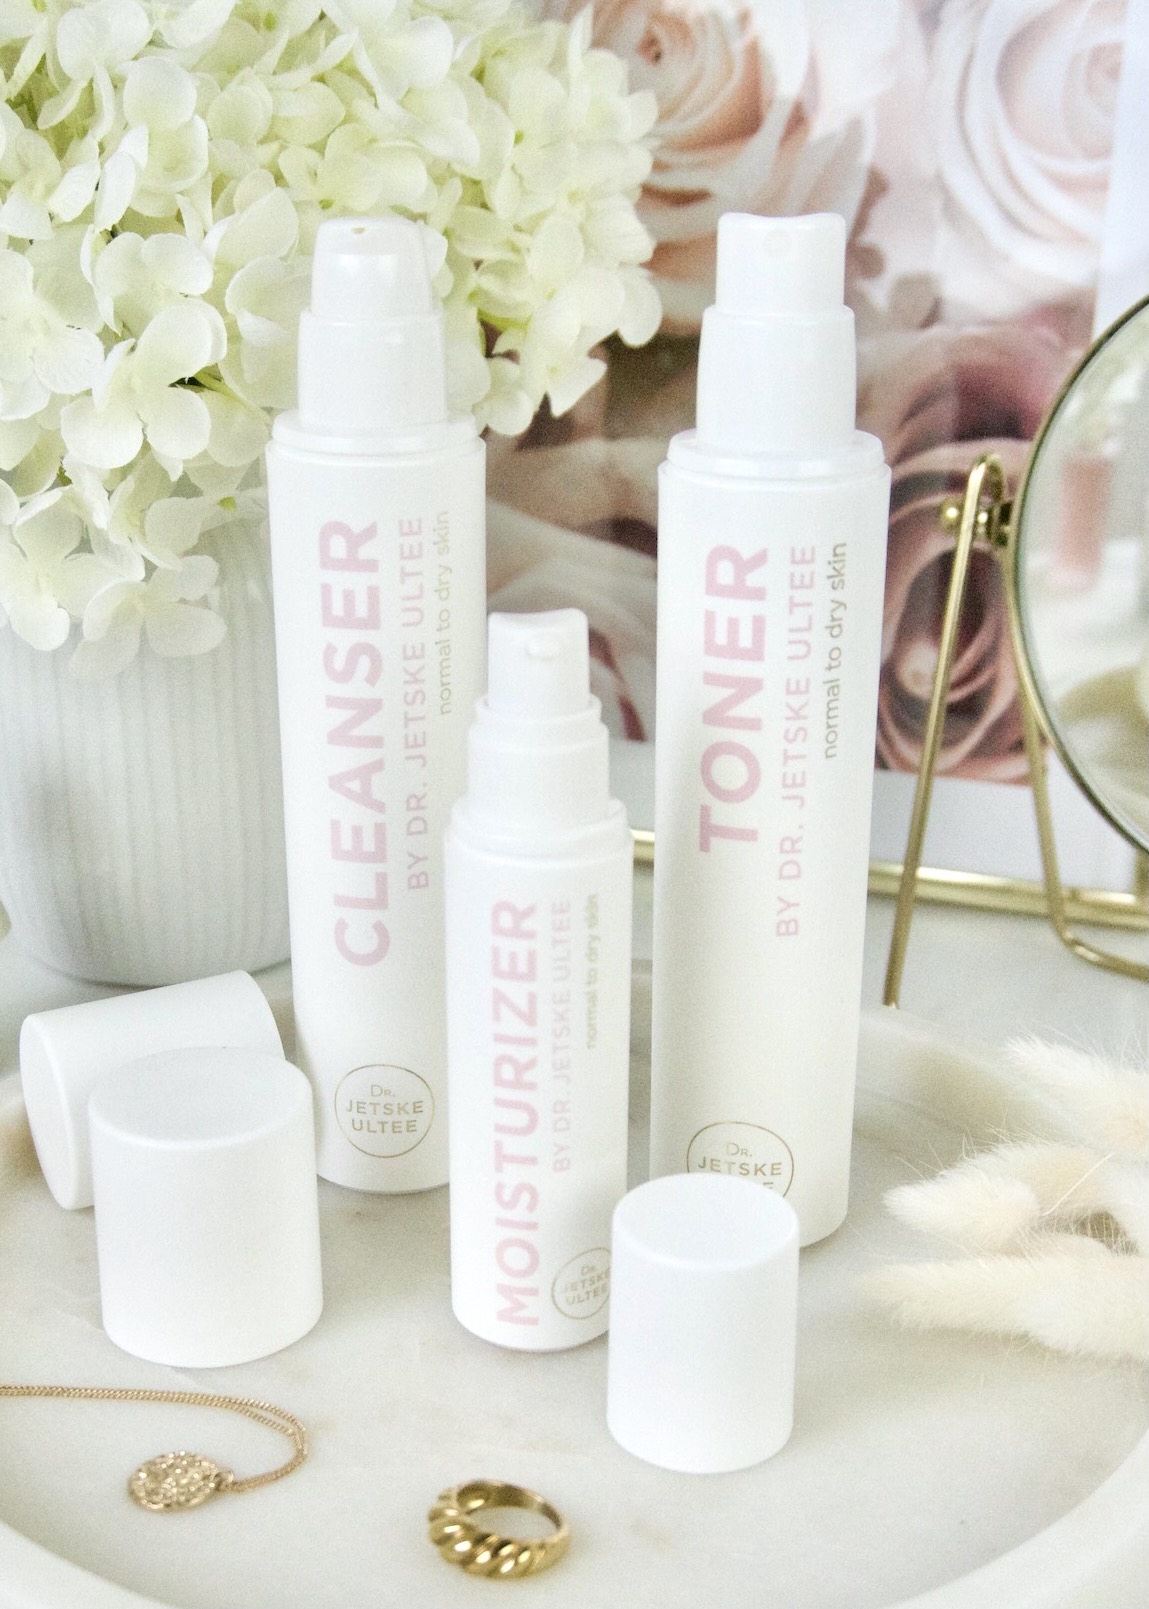 Dr. Jetske Ultee Skincare Cleanser, Toner & Moisturizer Review